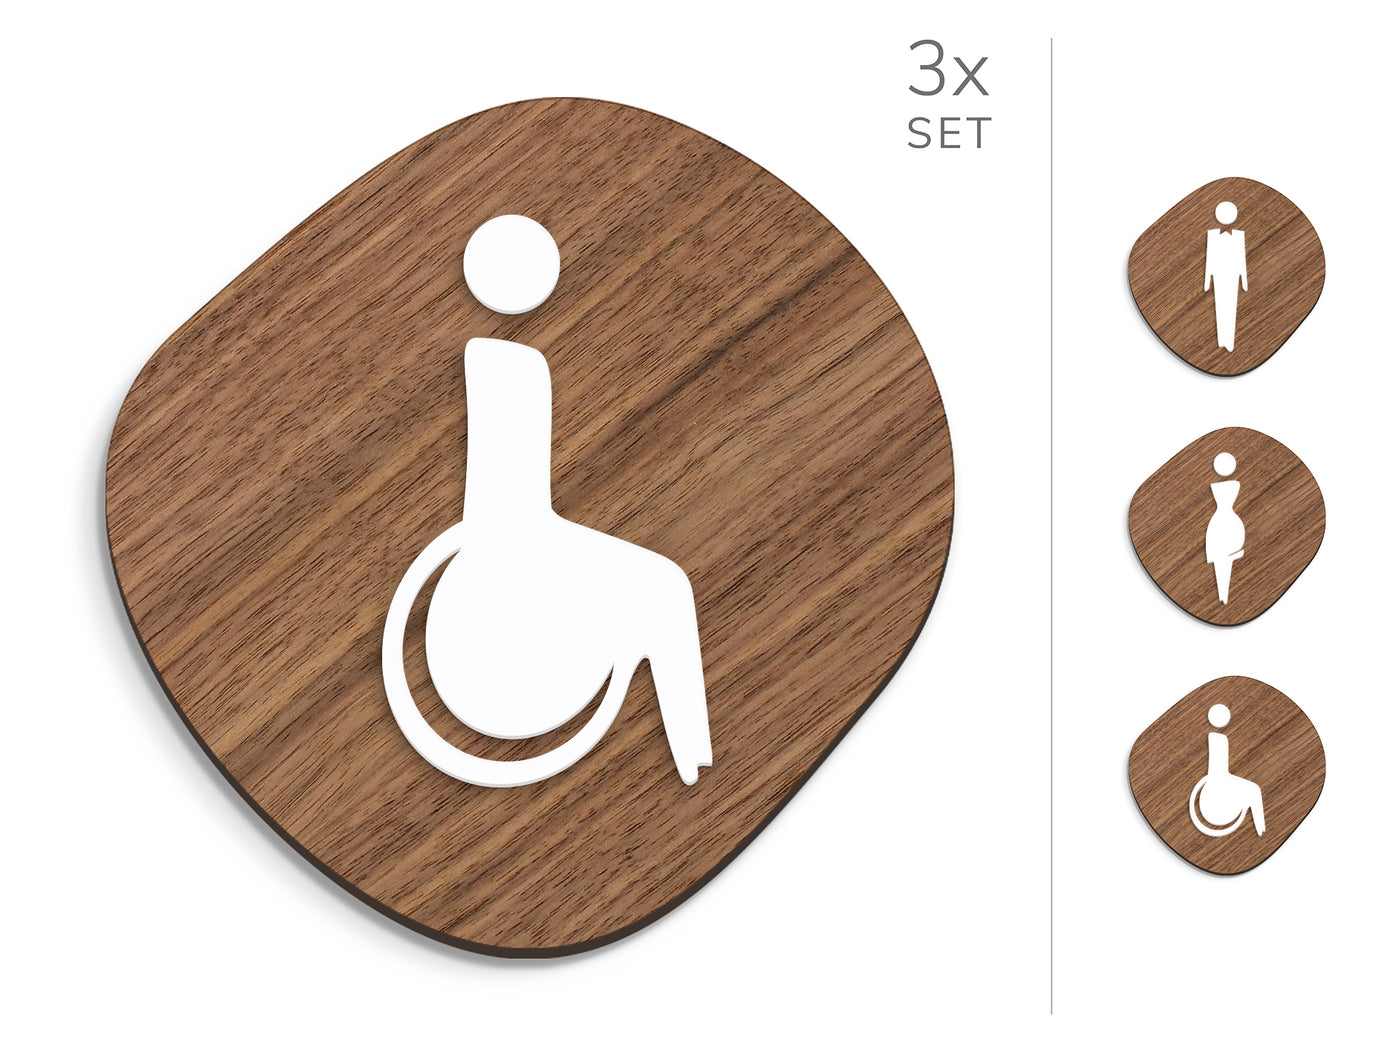 Elegant, 3x Base en forme de pierre - Jeu Panneau de signalisation toilettes, signalétique sanitaires - Homme, Femme, Handicapé